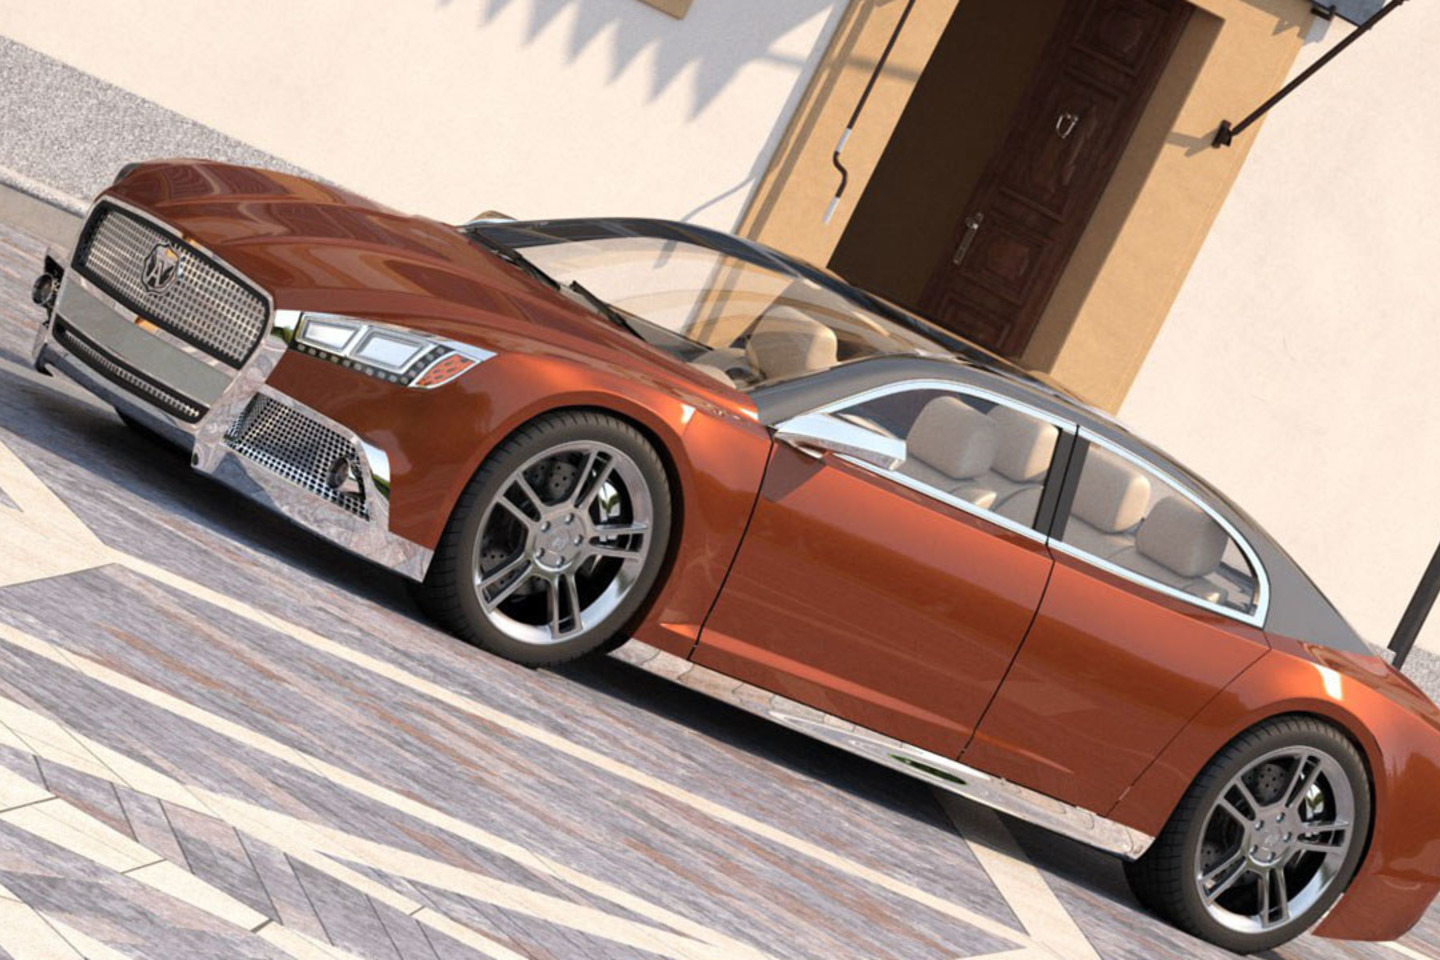 Jaunas rusų dizaineris taip įsivaizduoja modernų „Volga“ automobilį. <br>Aleksandro Štormo nuotr.